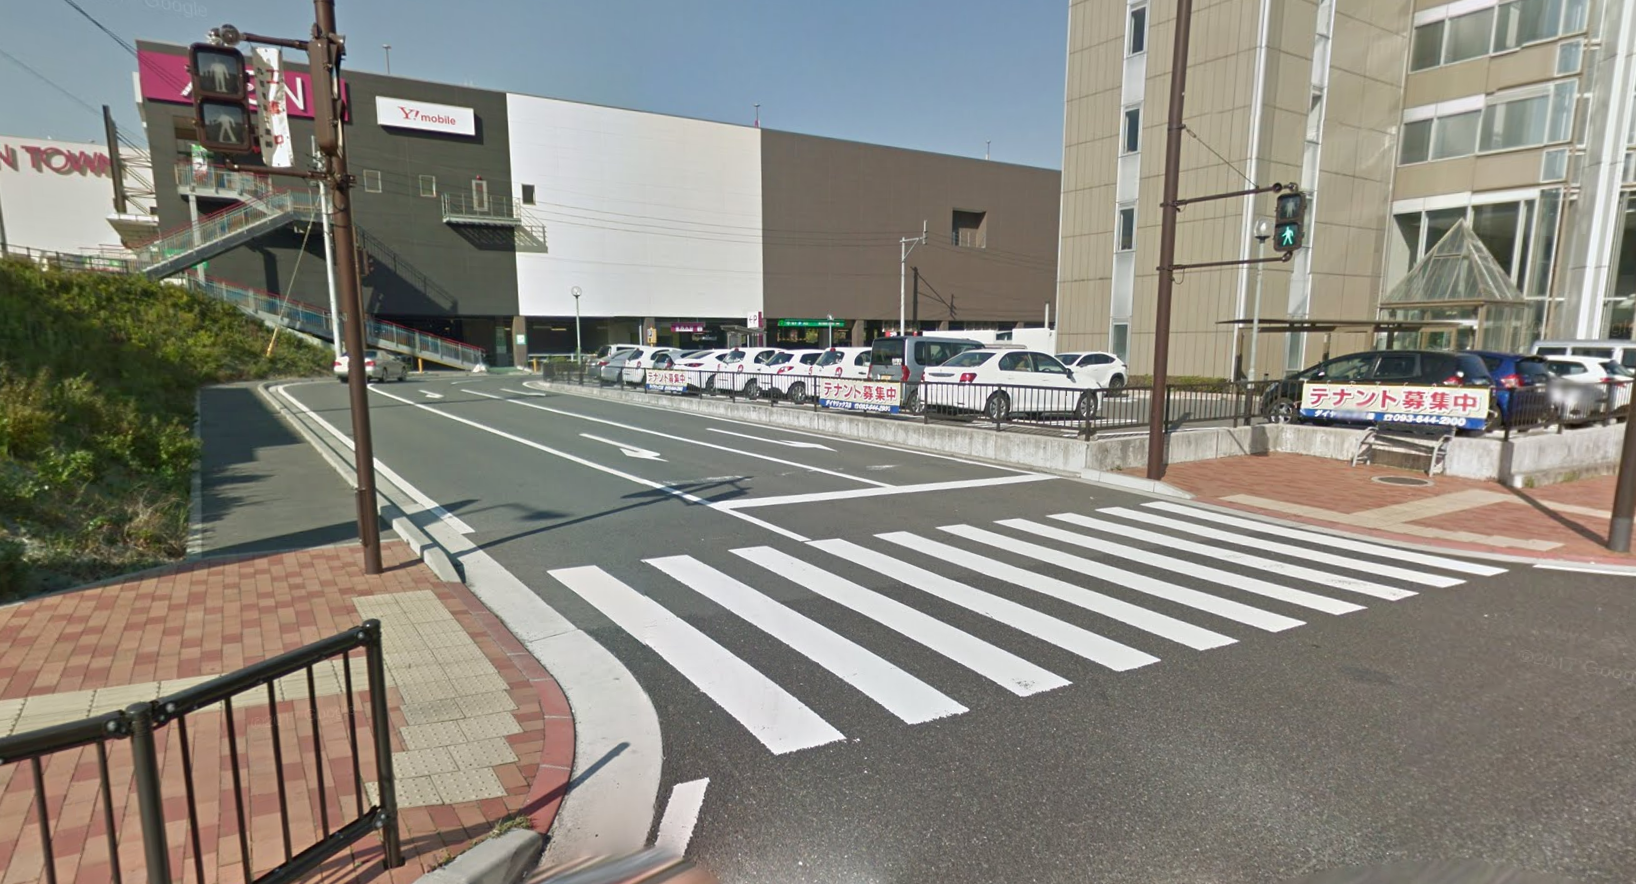 ホットヨガスタジオLAVAイオンタウン黒崎店の隣のはま寿司の北側にある駐車場への道